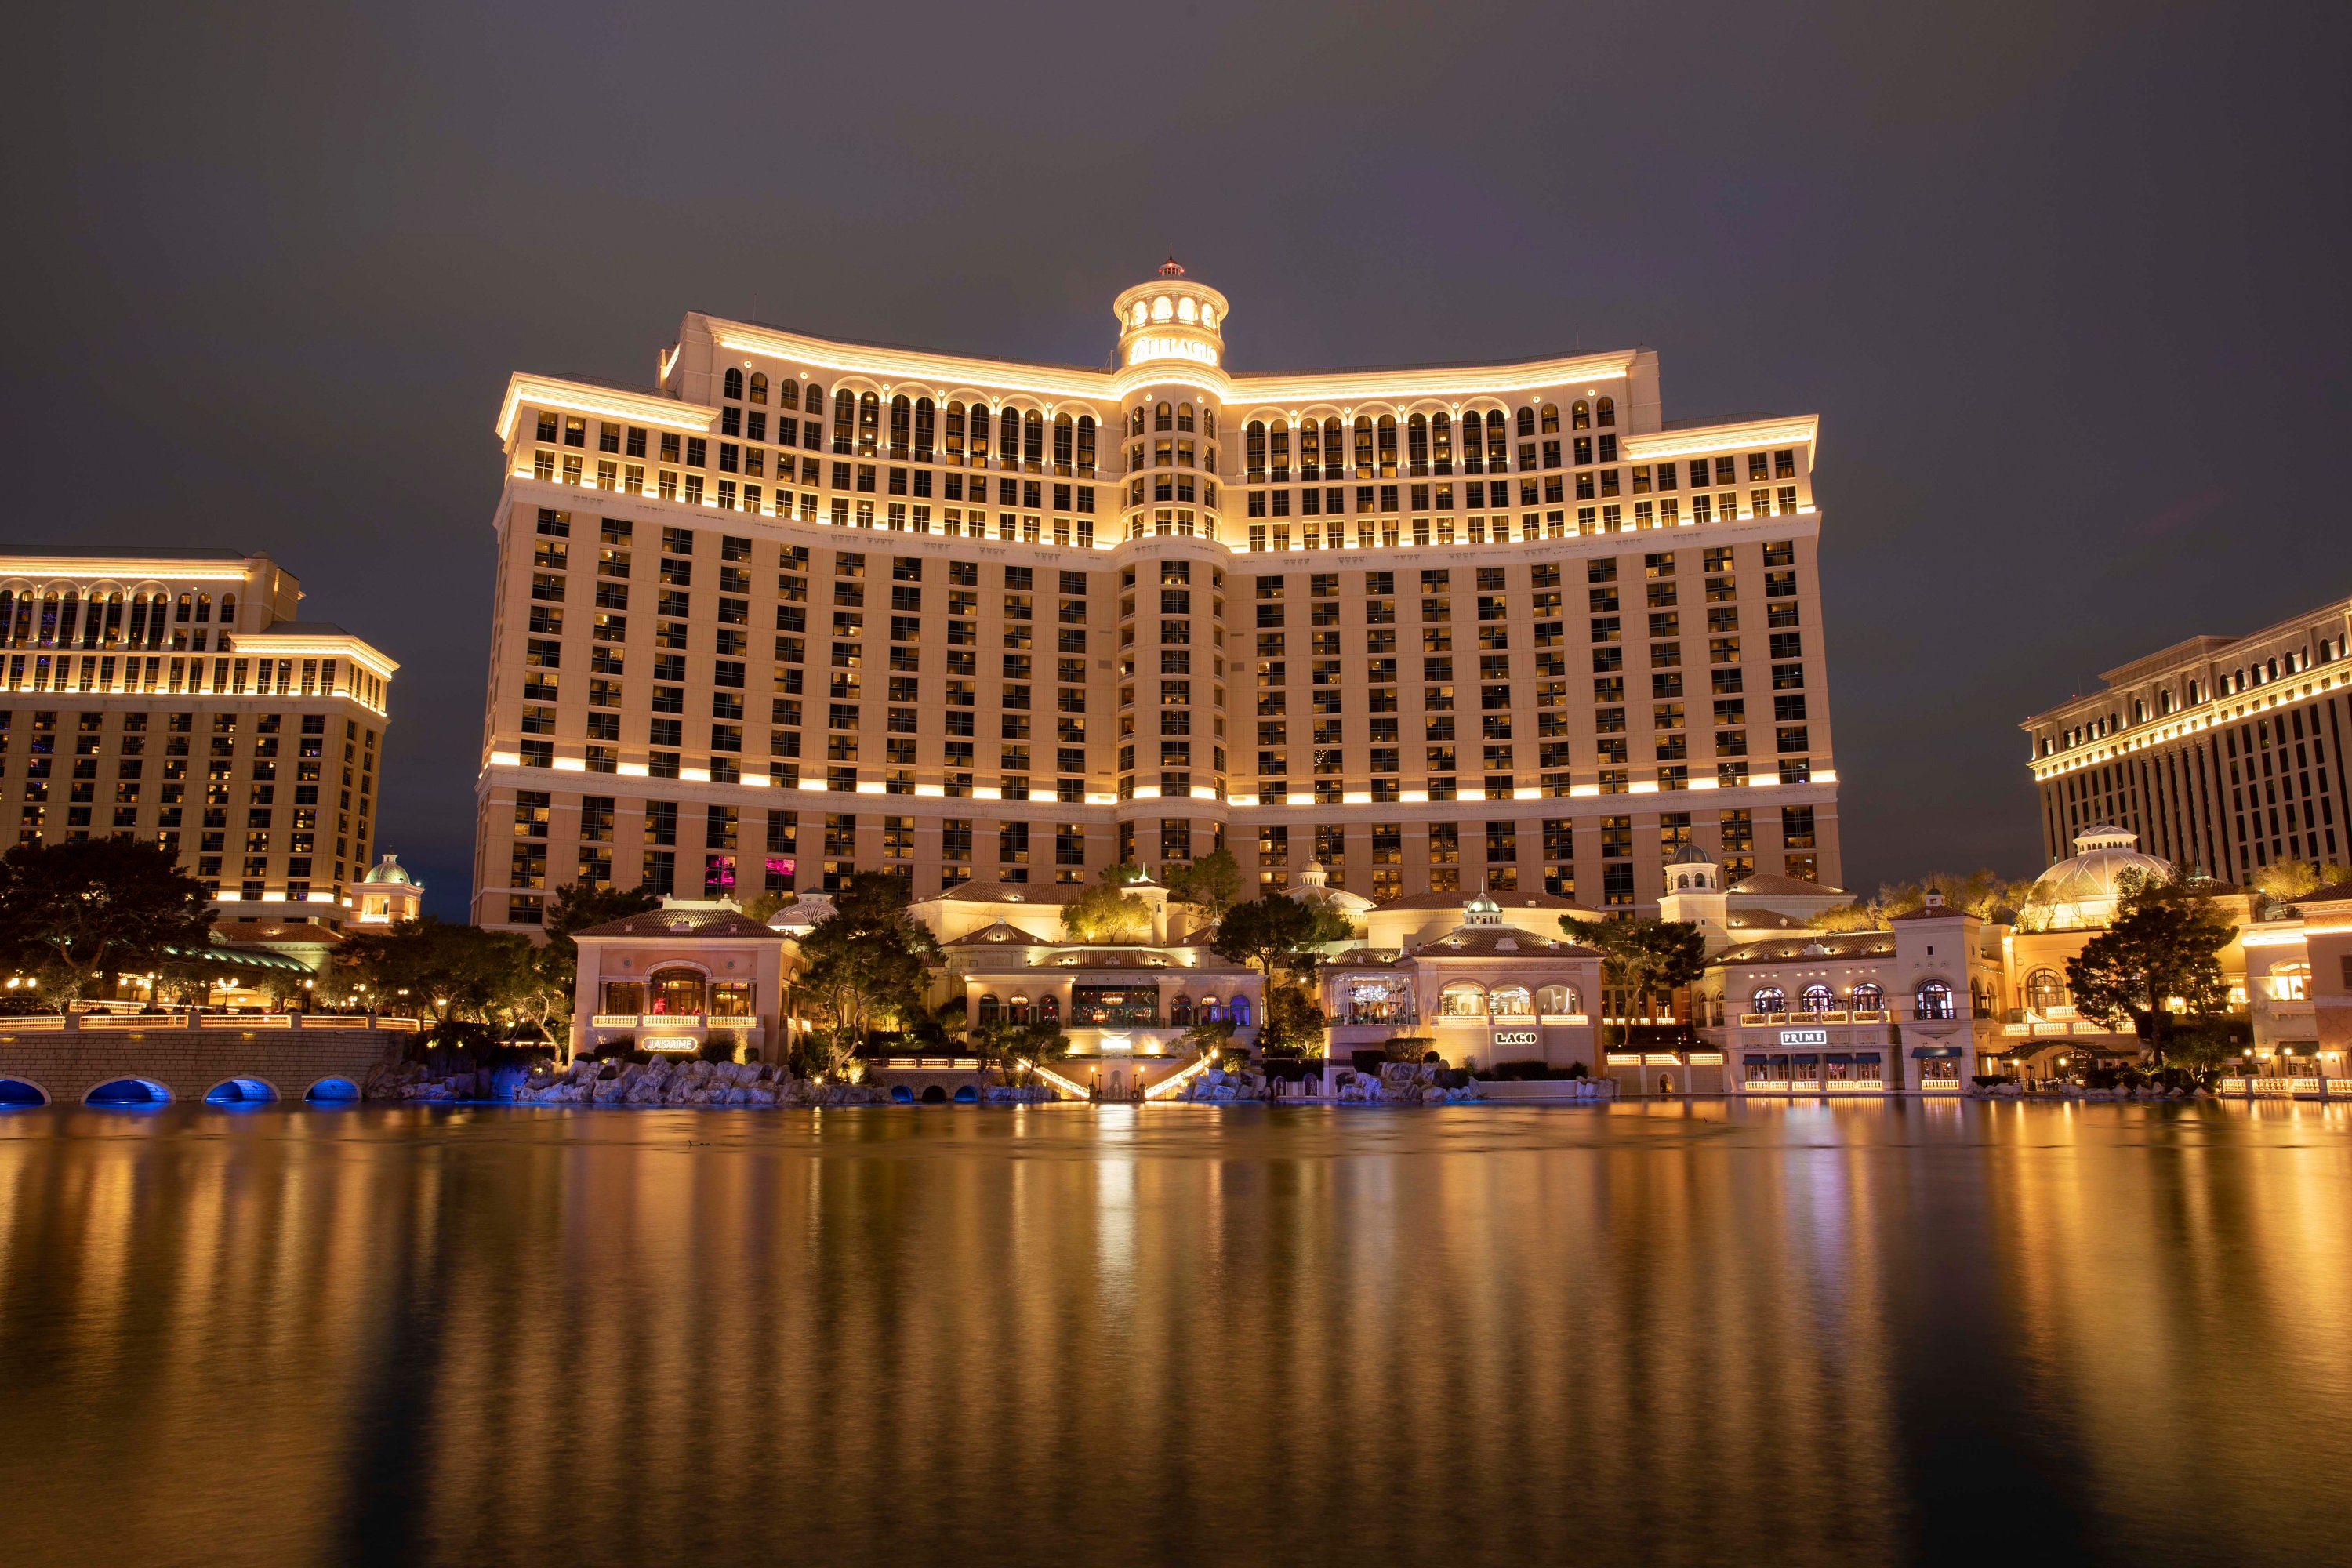 Bellagio Hotel and Casino in Las Vegas - An Elegant Italian